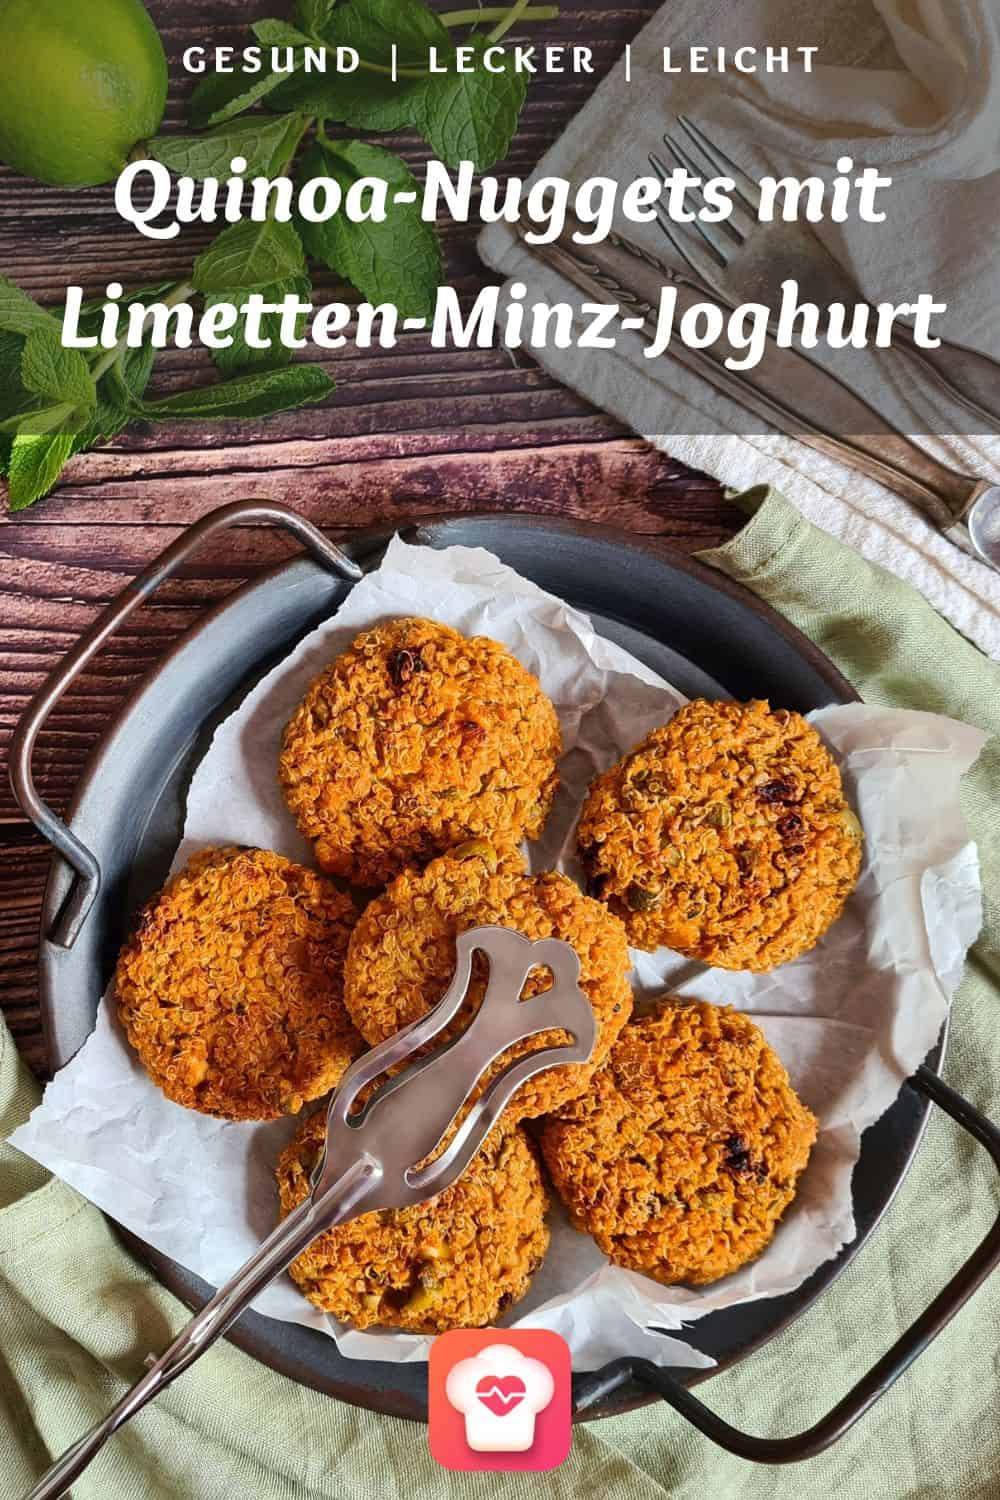 Quinoa-Nuggets mit Oliven und Limetten-Minz-Joghurt